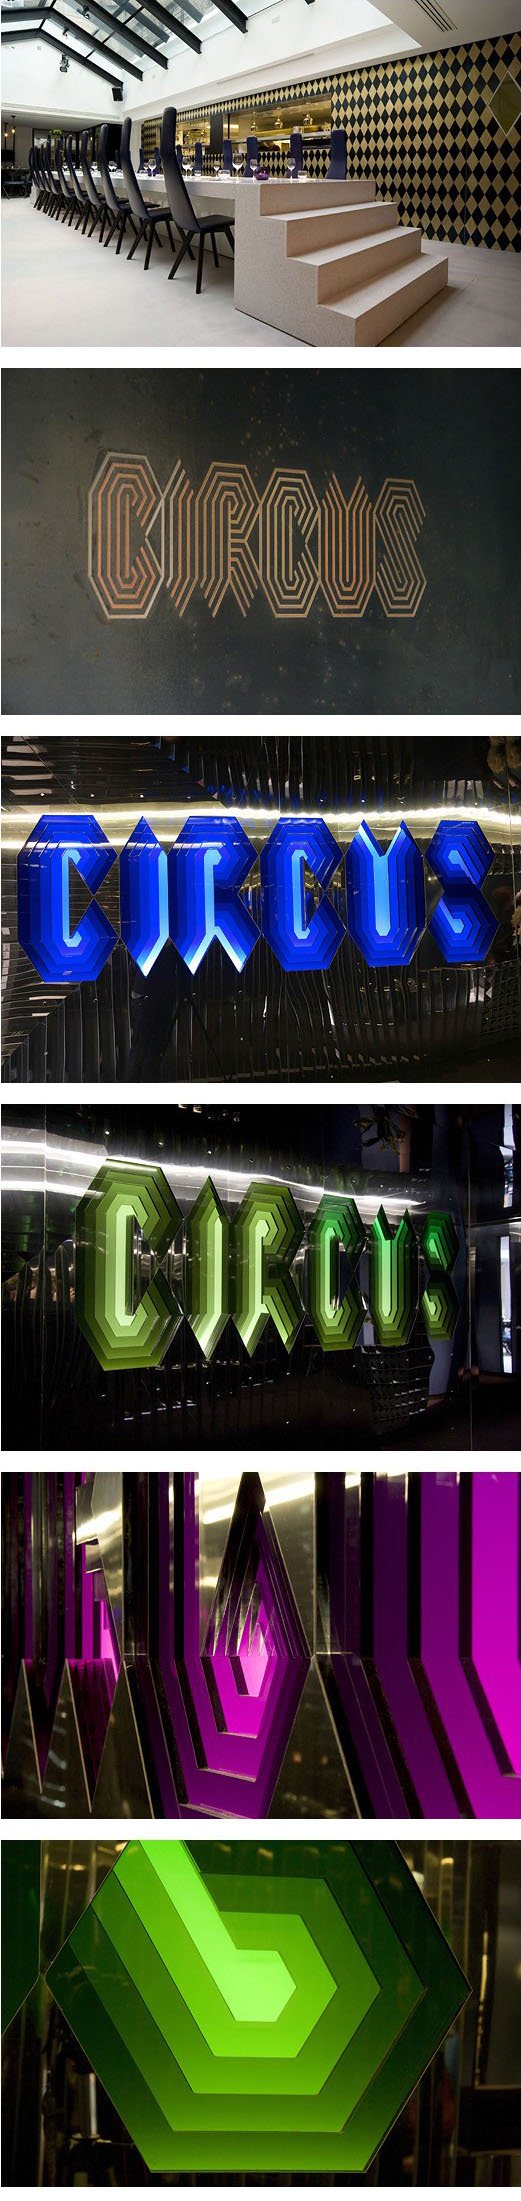 Circus俱乐部品牌形象设计